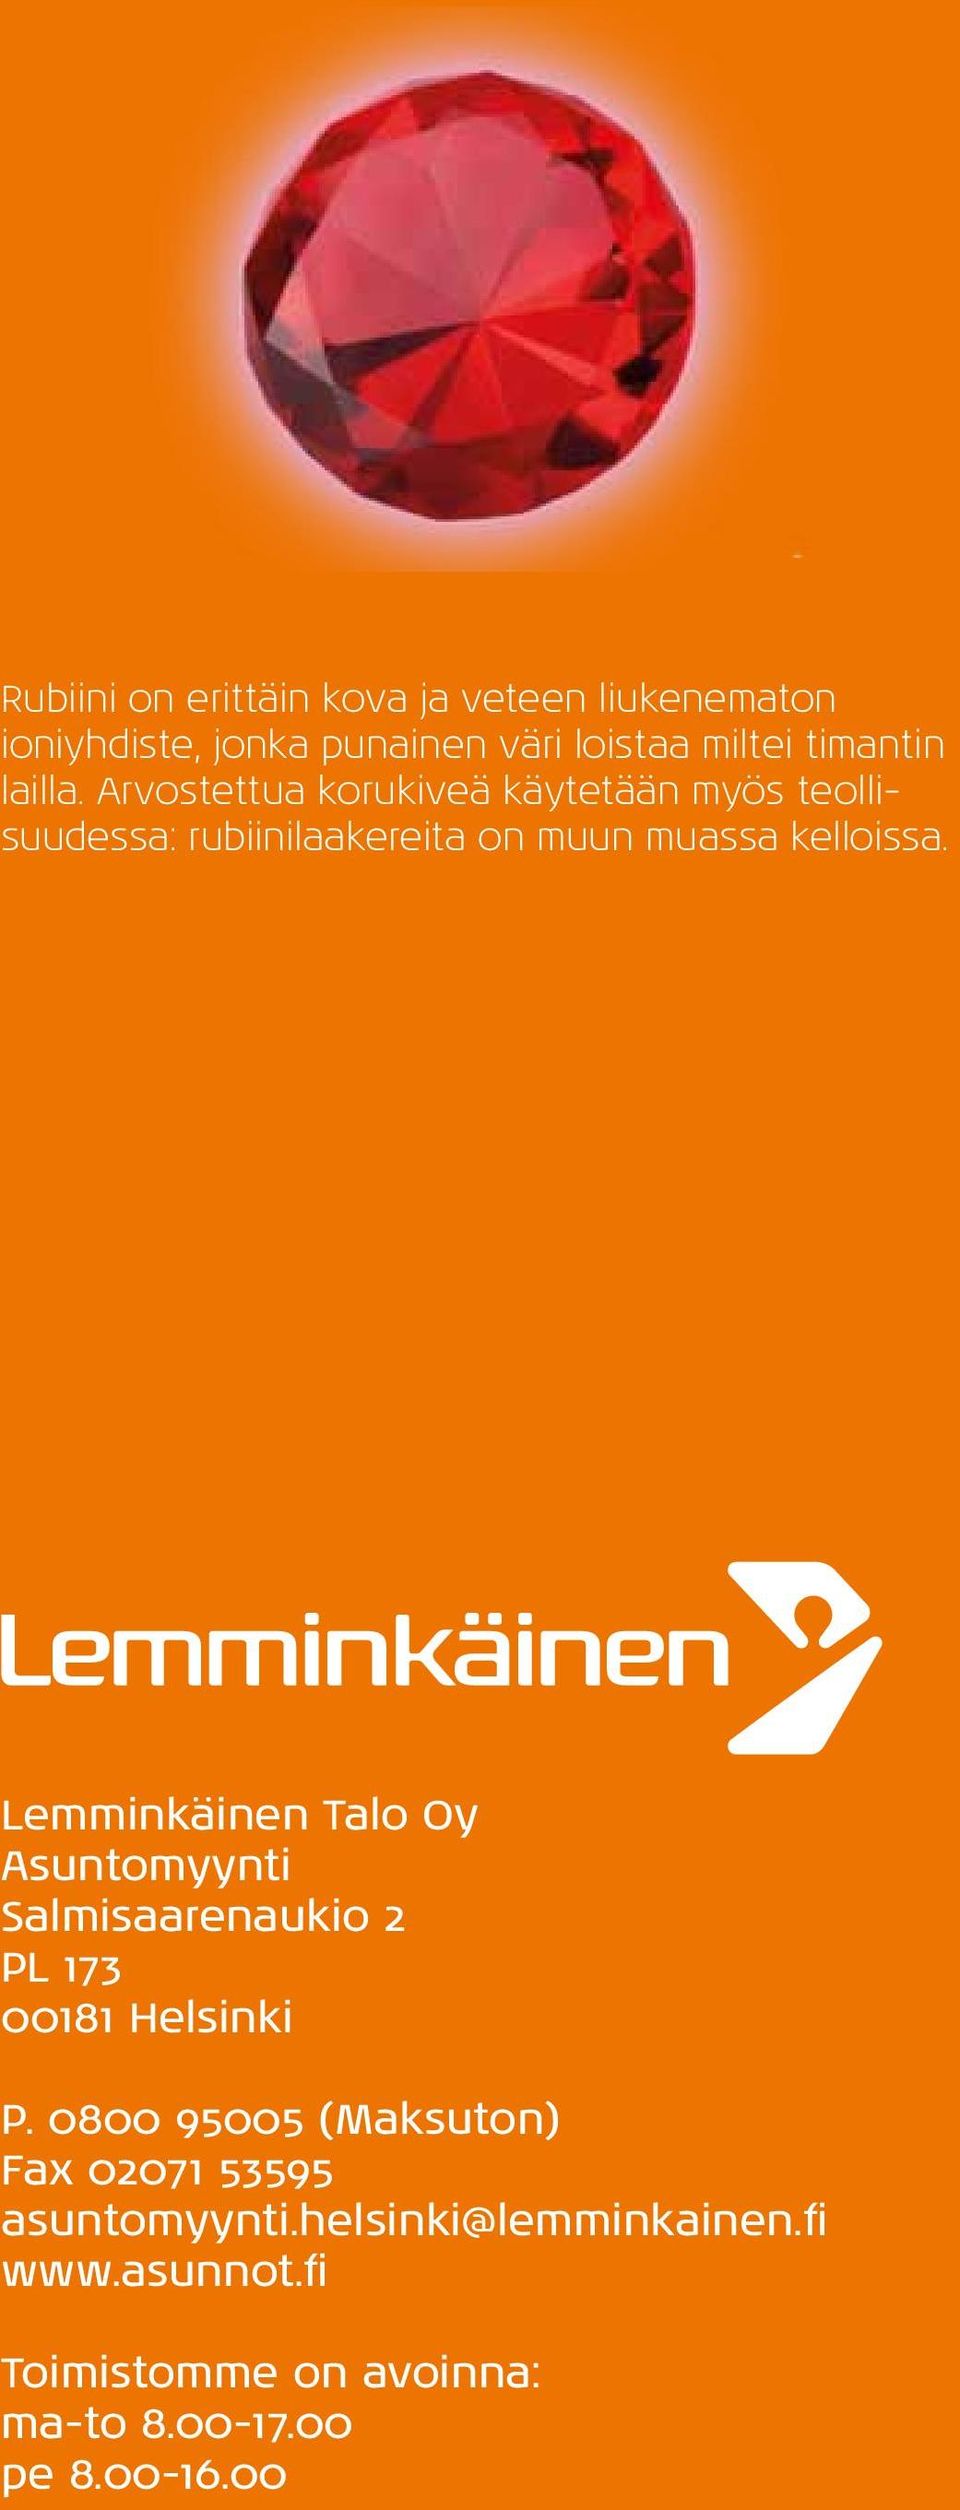 Lemminkäinen Talo Oy Asuntomyynti Salmisaarenaukio 2 PL 173 00181 Helsinki P.